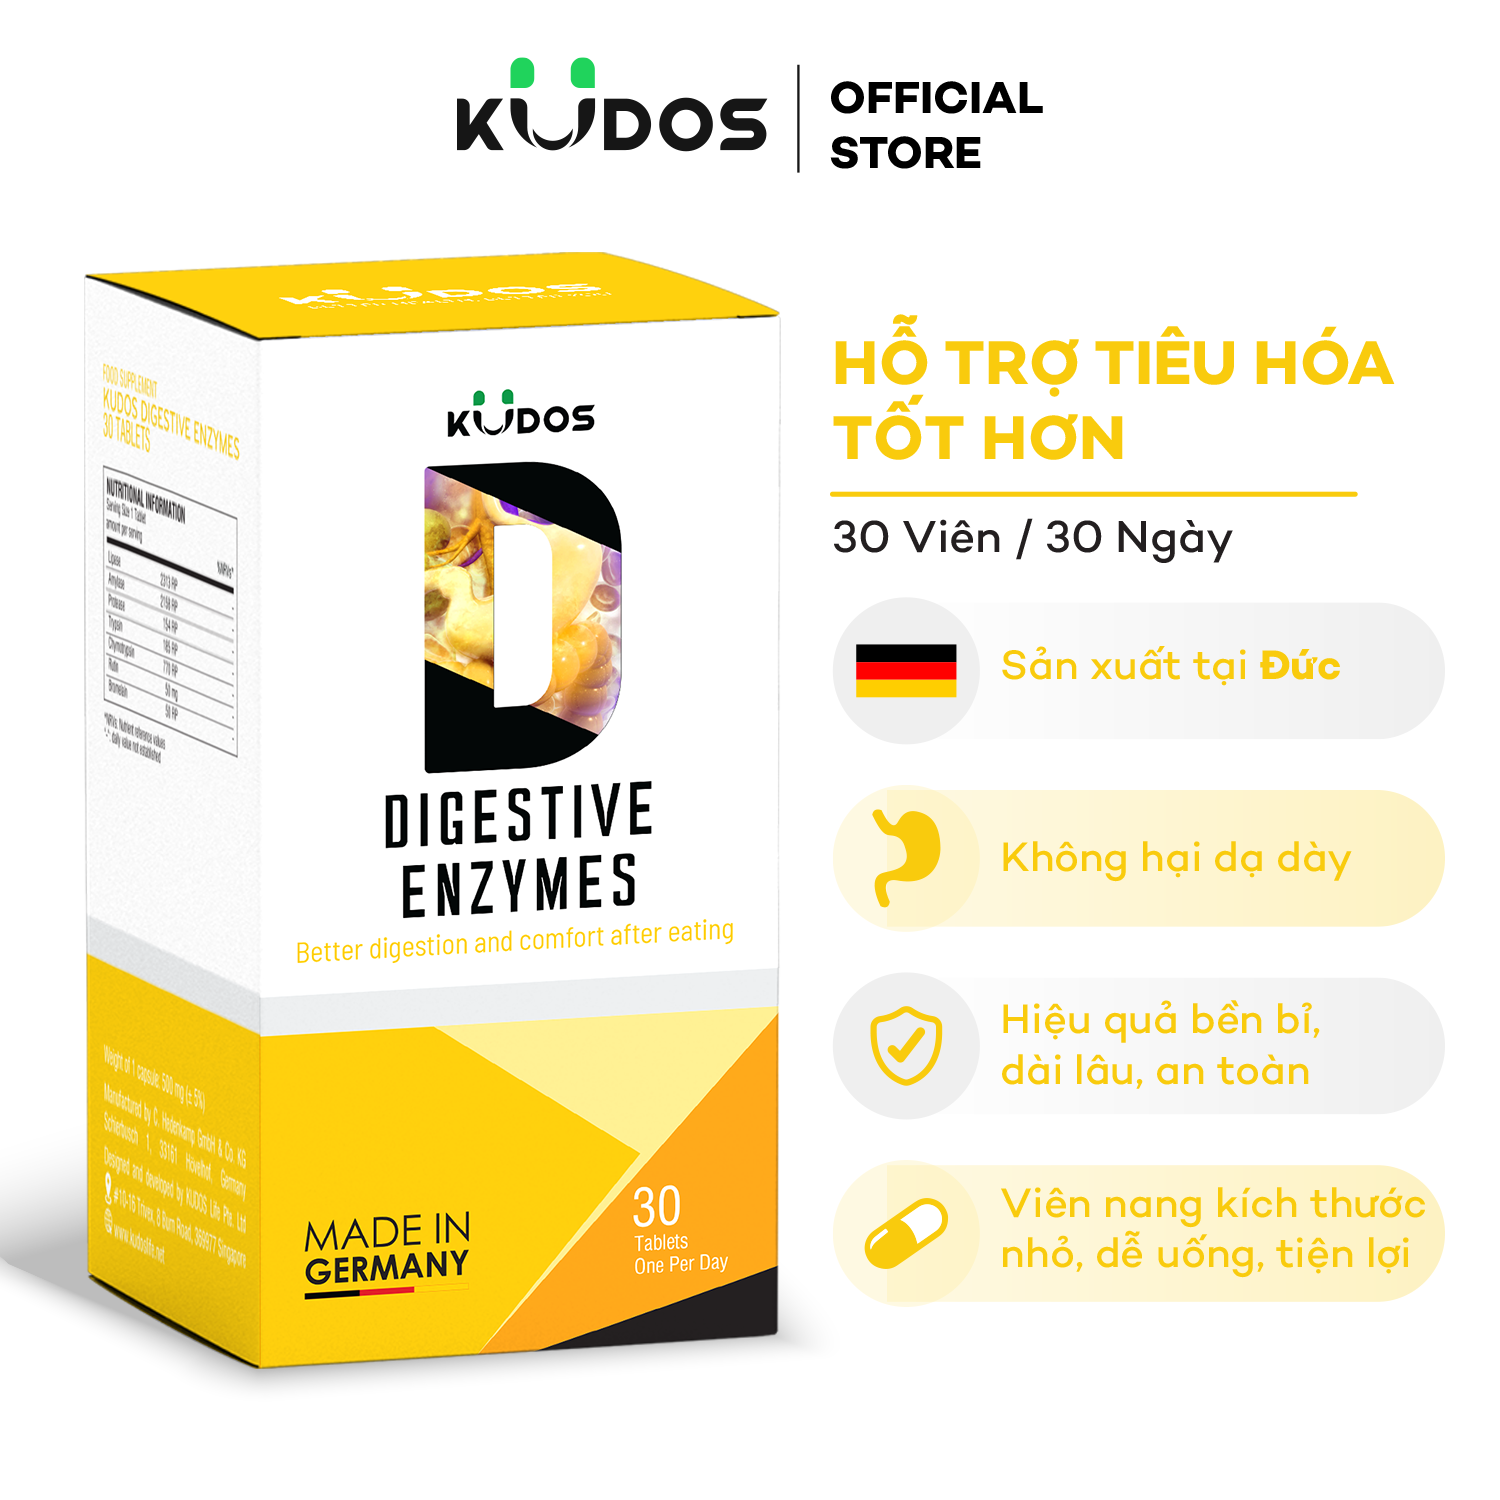 Viên Uống KUDOS DIGESTIVE ENZYMES hỗ trợ tiêu hóa (30 viên/hộp)